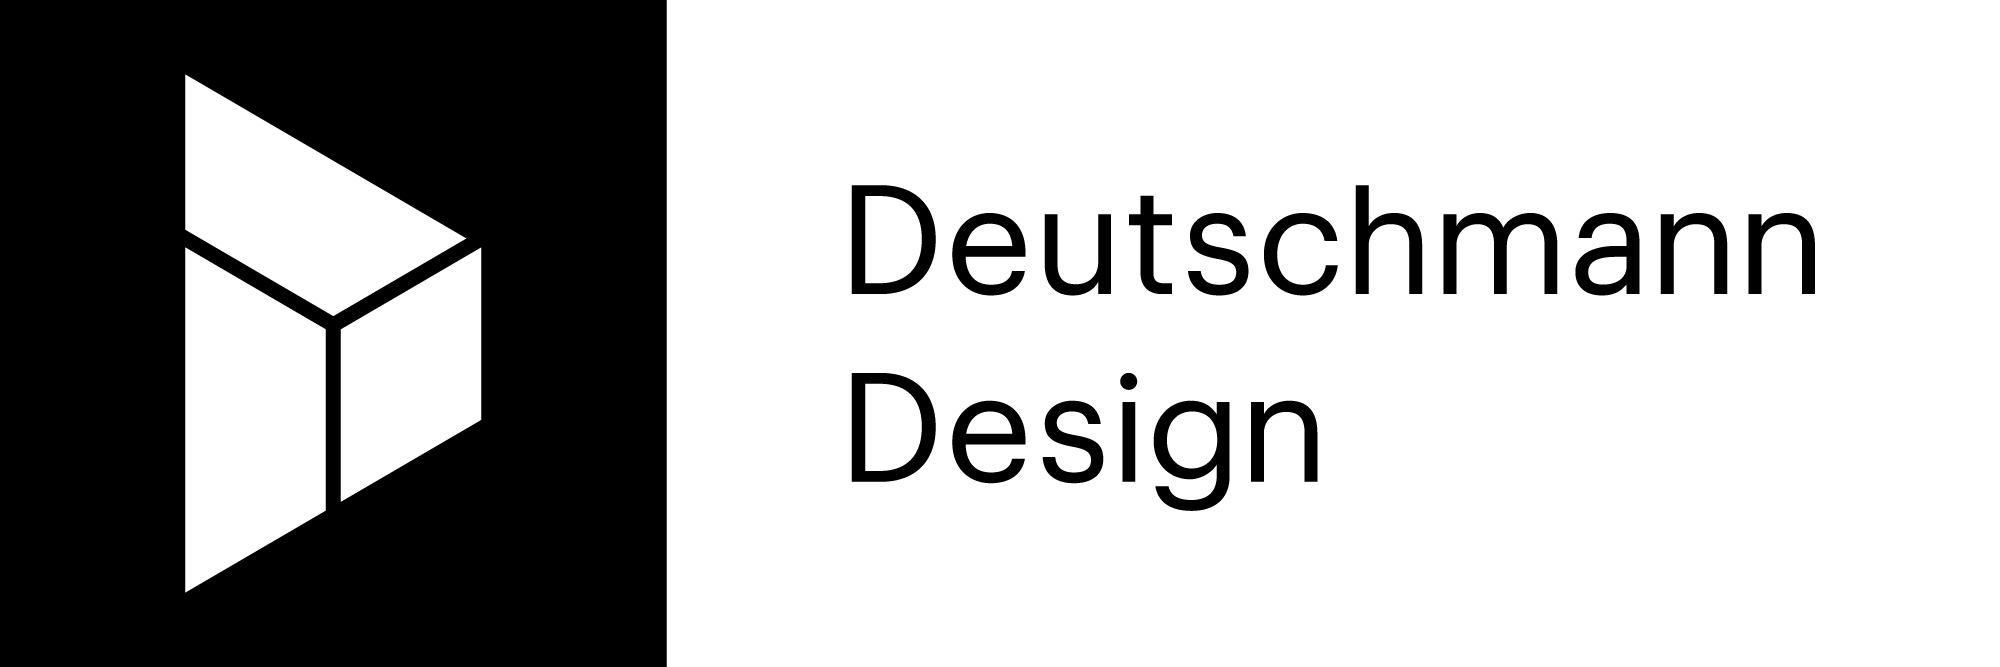 Deutschmann-Design_Logo